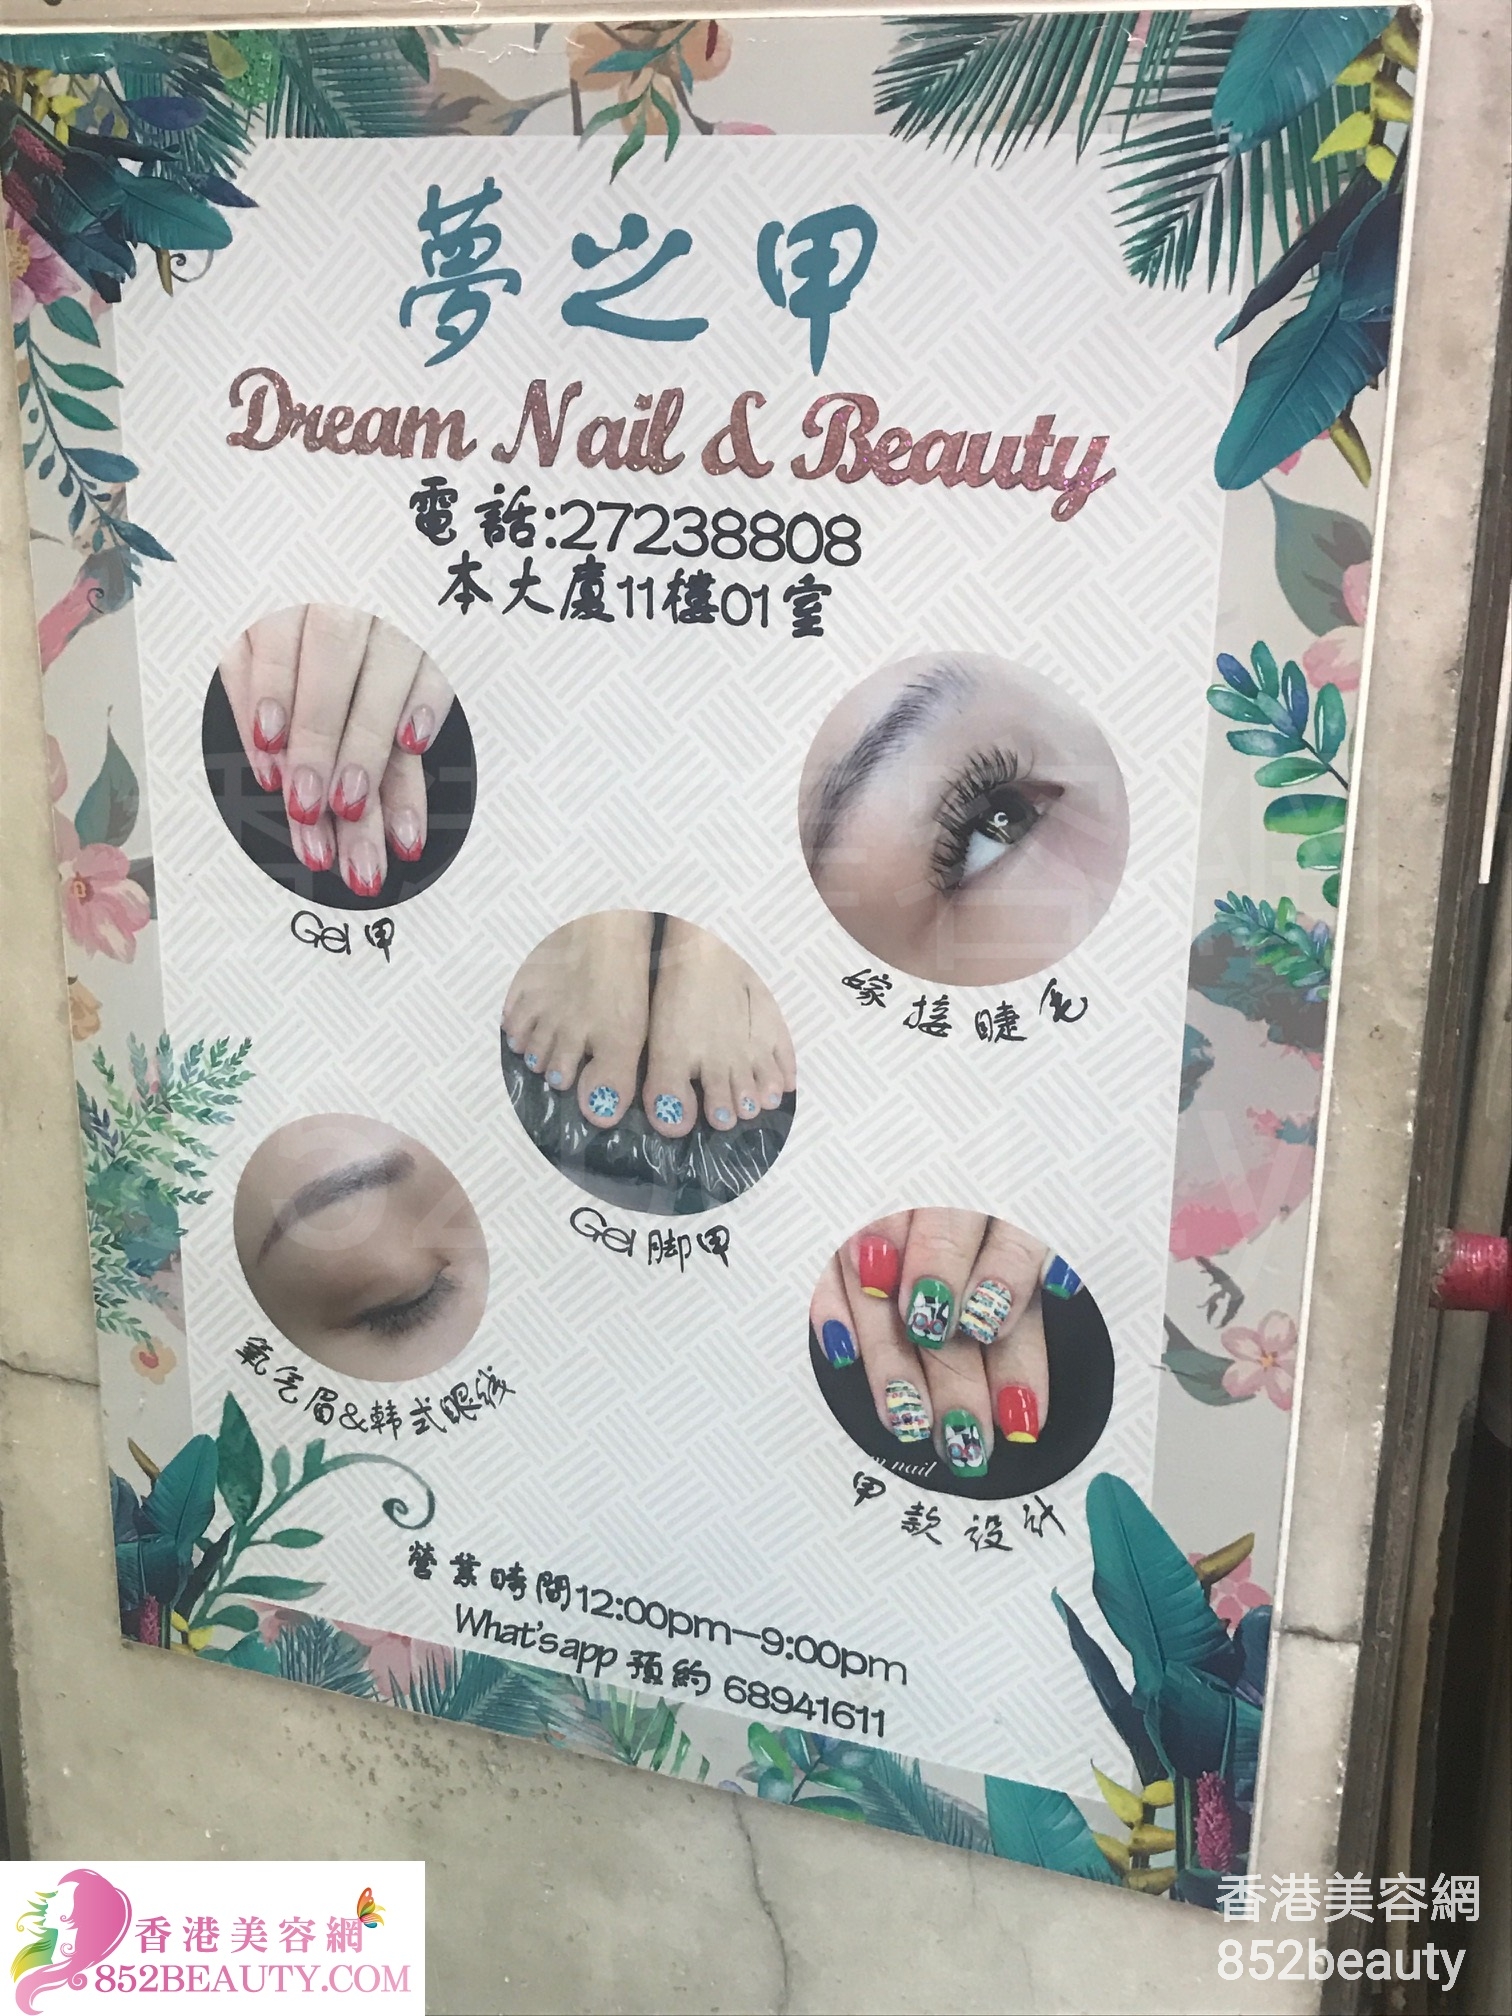 香港美容網 Hong Kong Beauty Salon 美容院 / 美容師: 夢之甲 Dream Nail & Beauty (已結業)